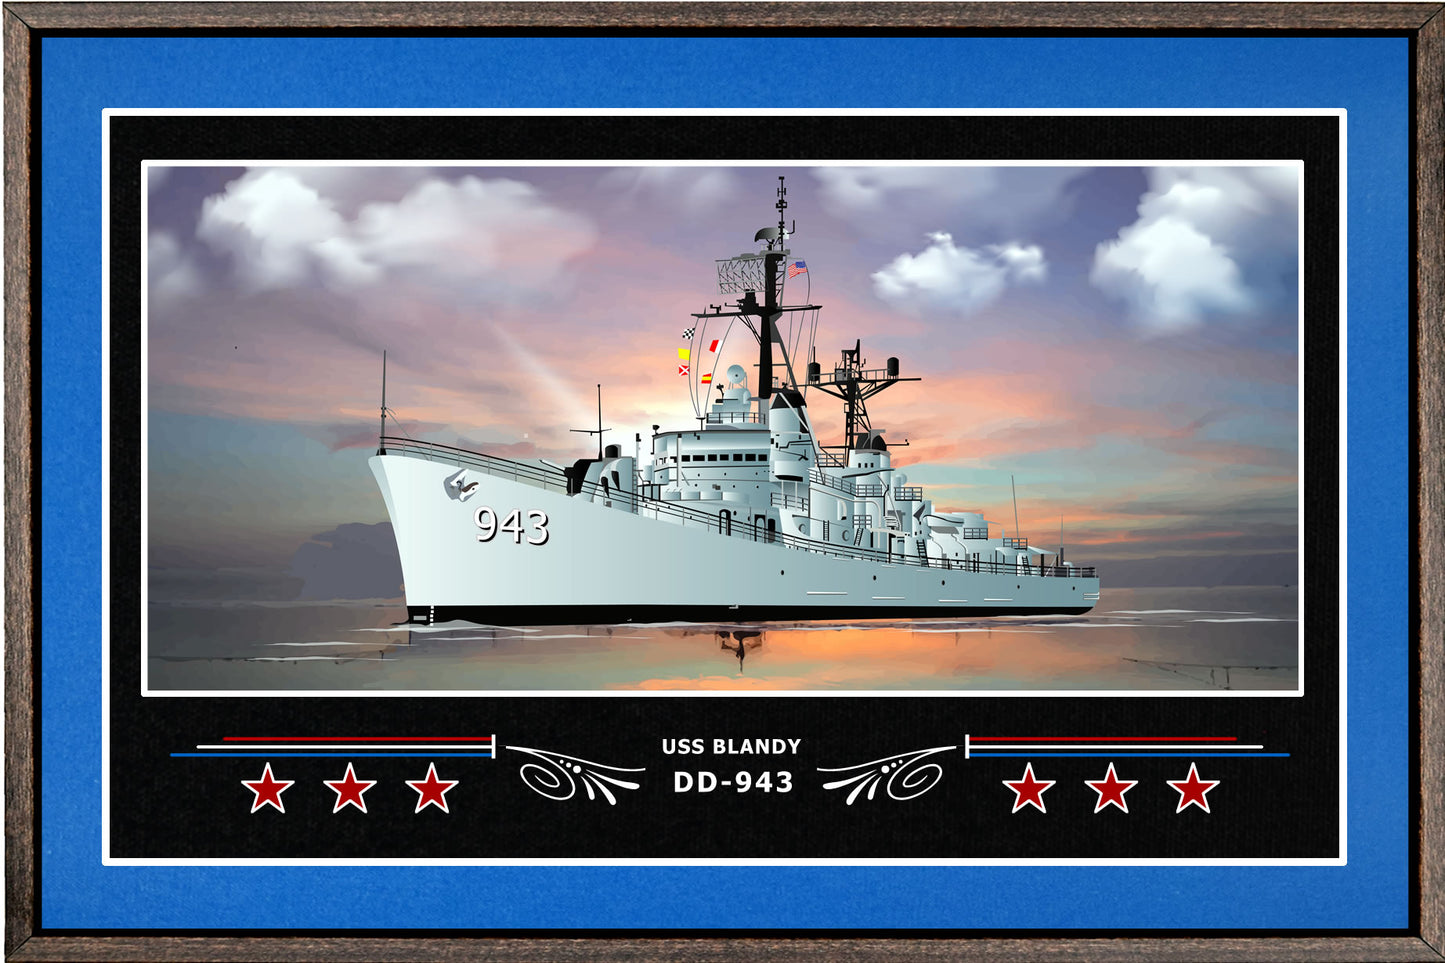 USS BLANDY DD 943 BOX FRAMED CANVAS ART BLUE